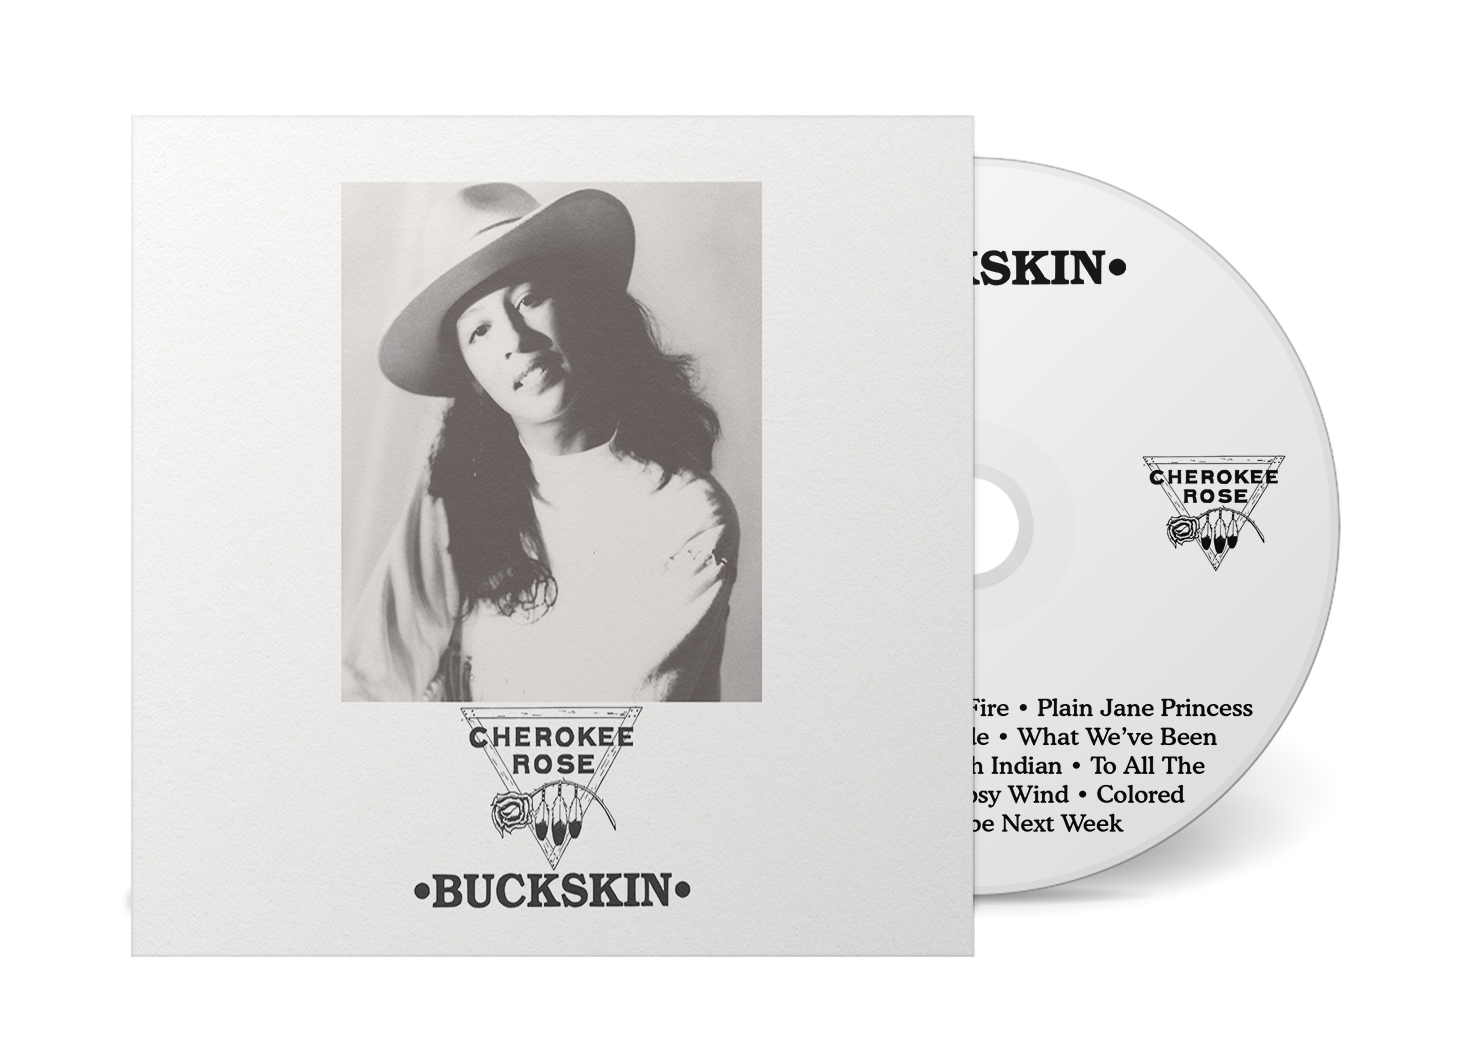 Cherokee Rose "Buckskin" CD